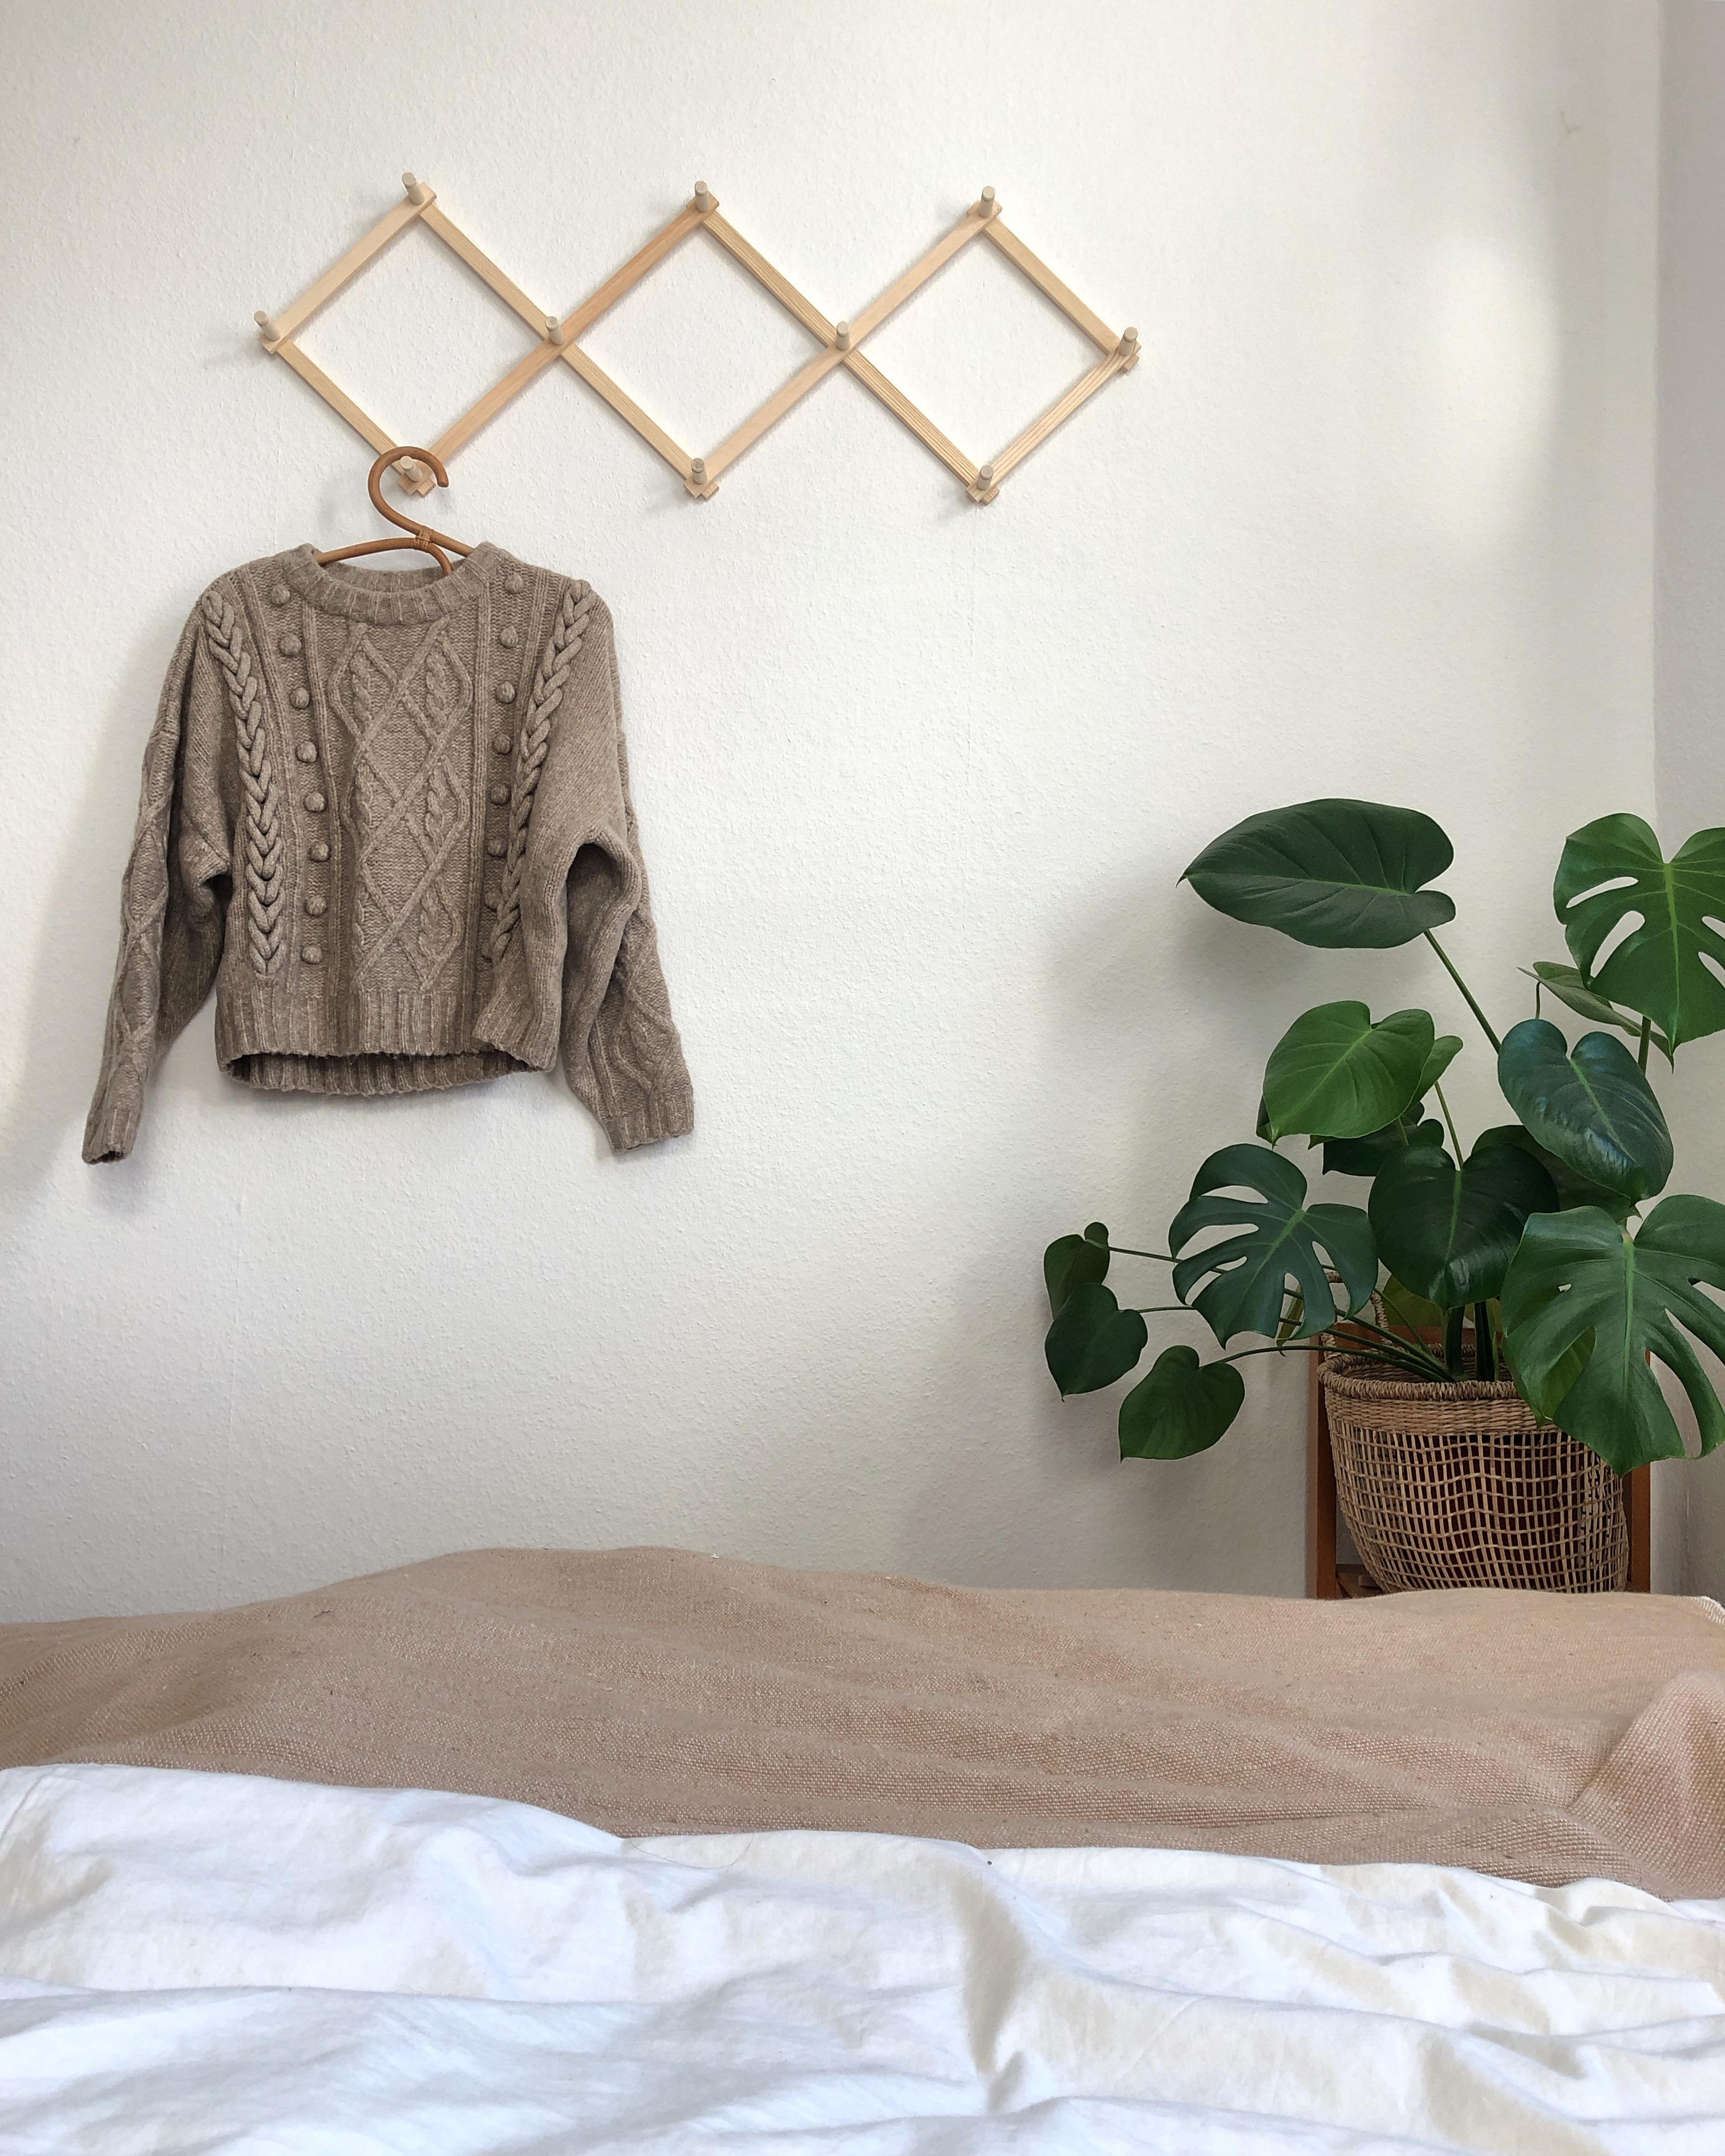 Hallo aus dem #schlafzimmer 👋🏼 #zickzackgarderobe #monstera #minimalistisch 